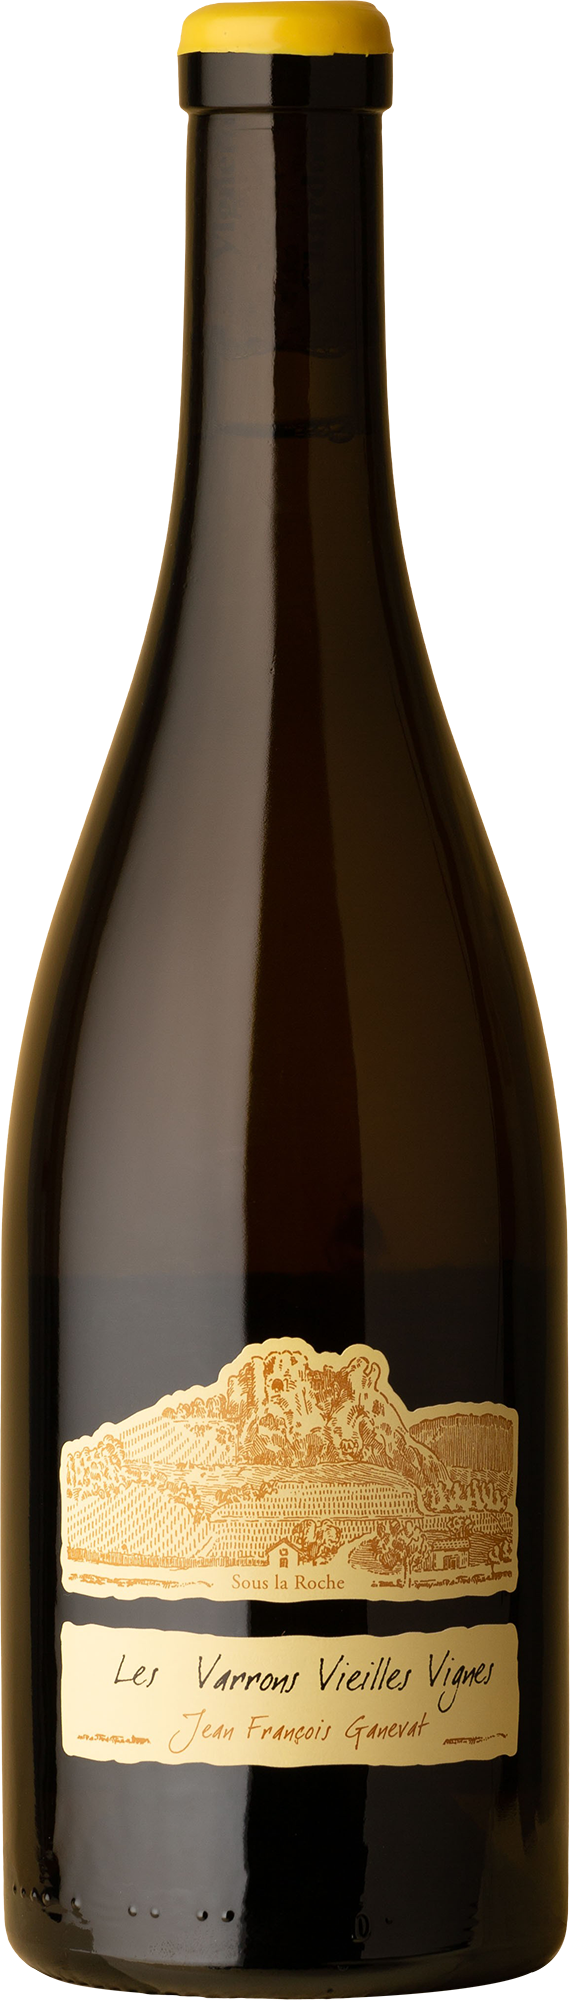 Jean-François Ganevat - Varrons Vieilles Vignes Chardonnay 2018 White Wine